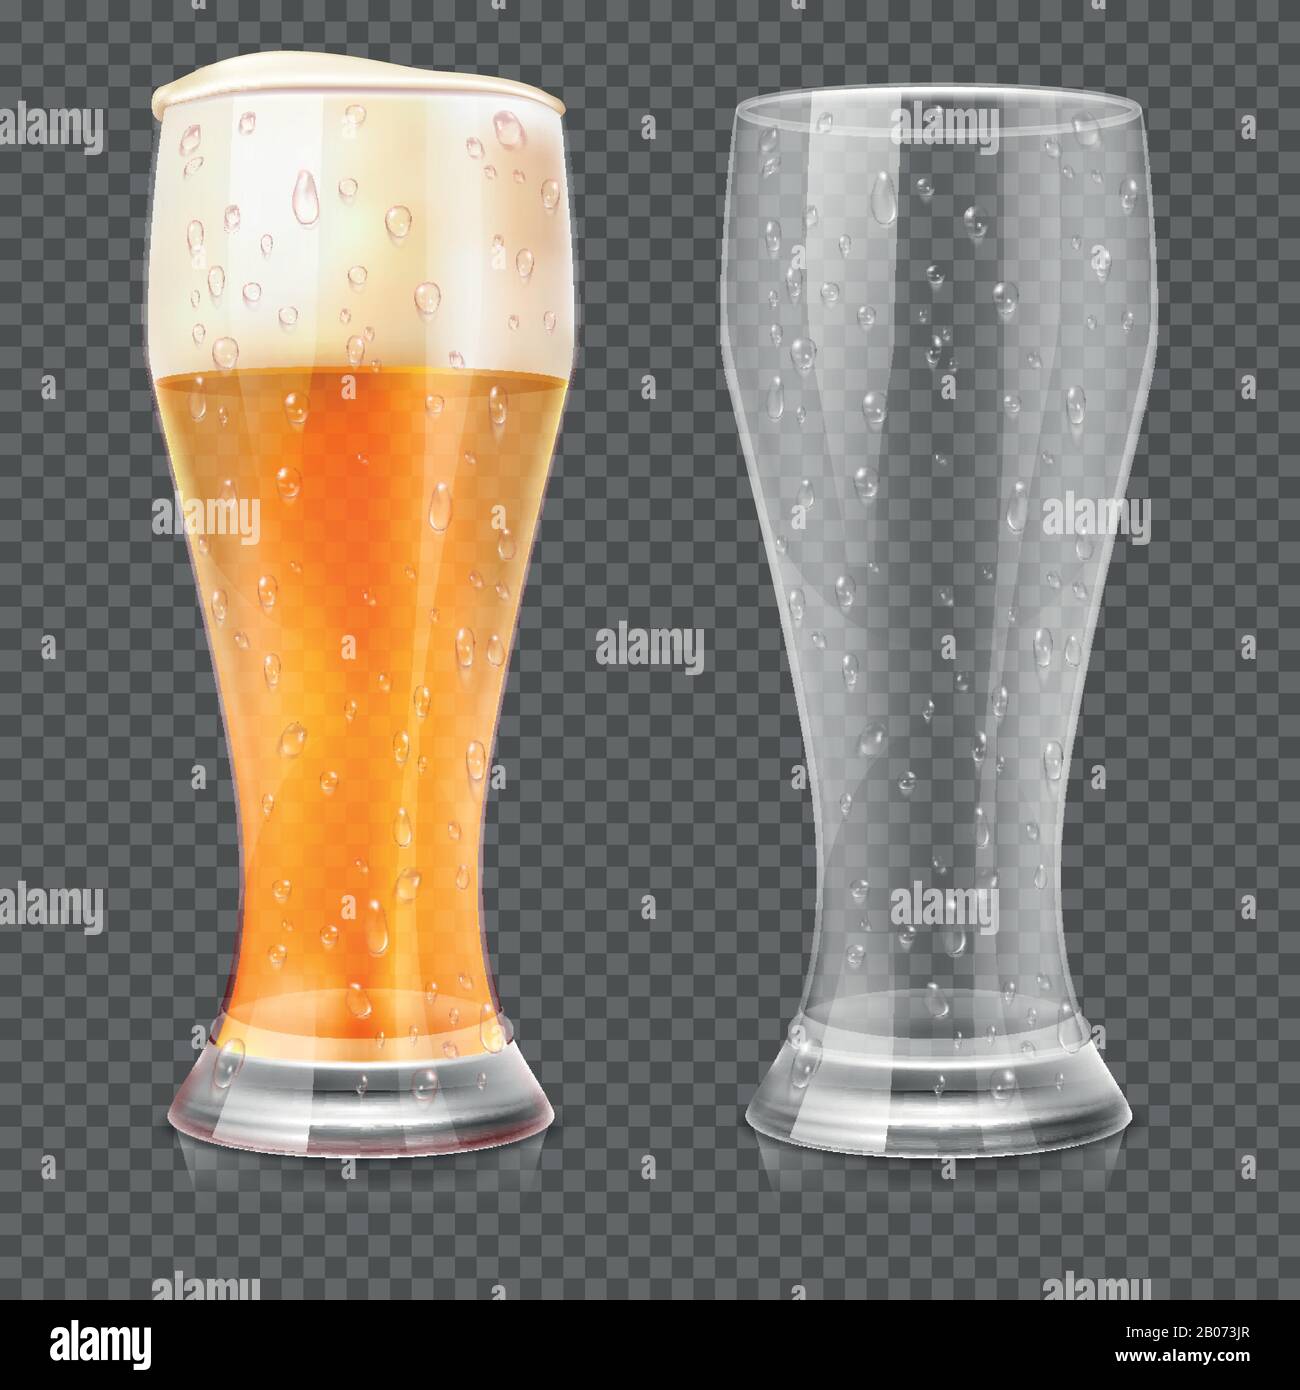 Realistische Biergläser, leerer Becher und volles Lagerglas isoliert auf transparentem kariertem Hintergrund. Alkoholgetränk mit weißem Schaum. Vektorgrafiken Stock Vektor